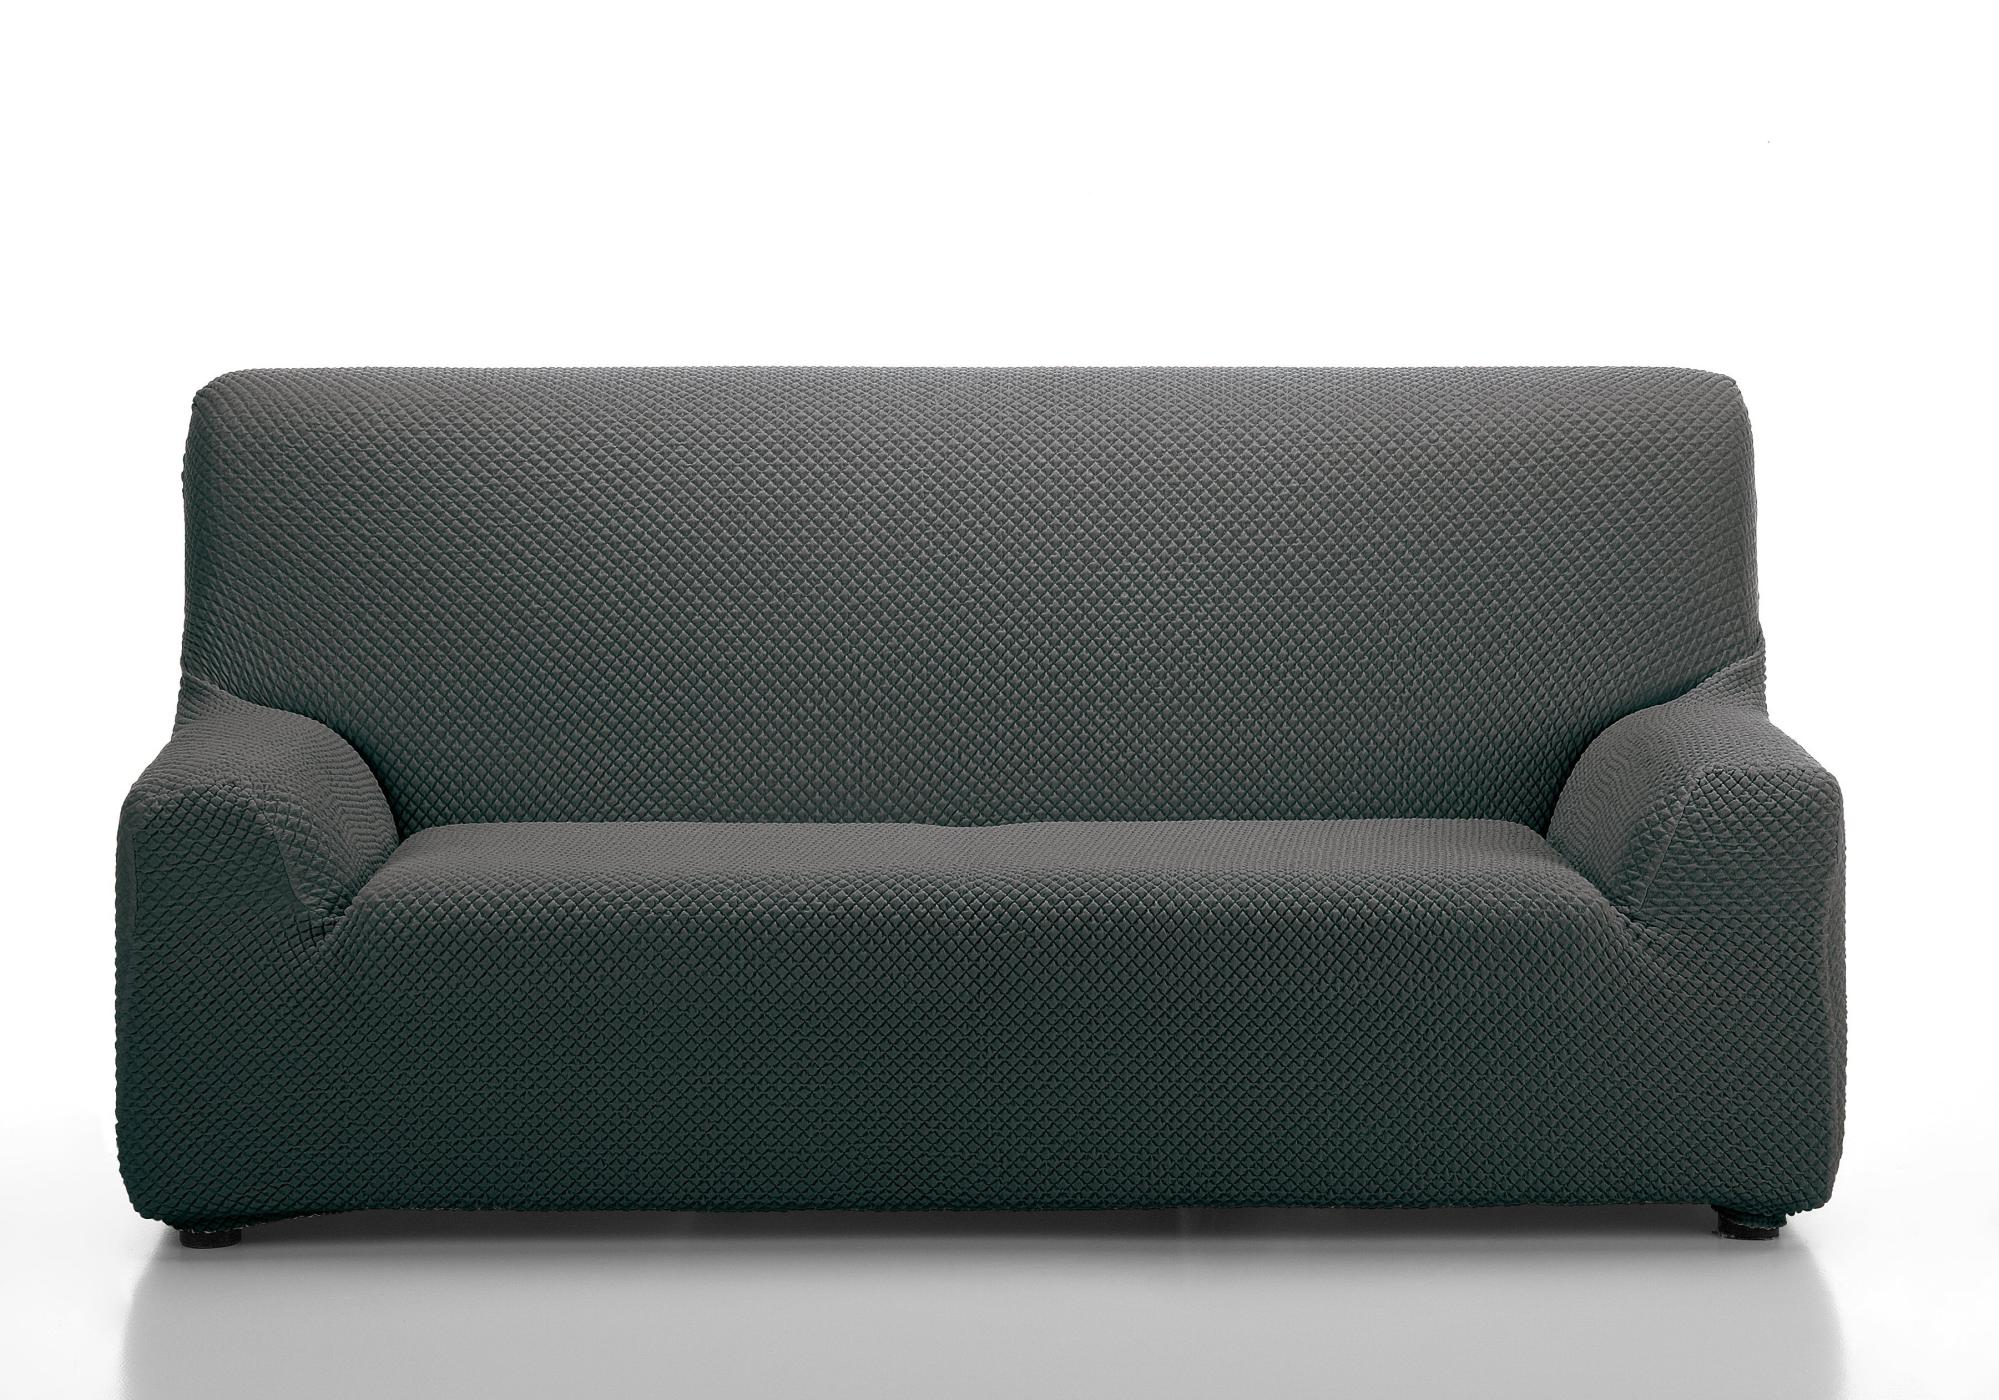 Funda sofá elástica erik gris 2 plazas